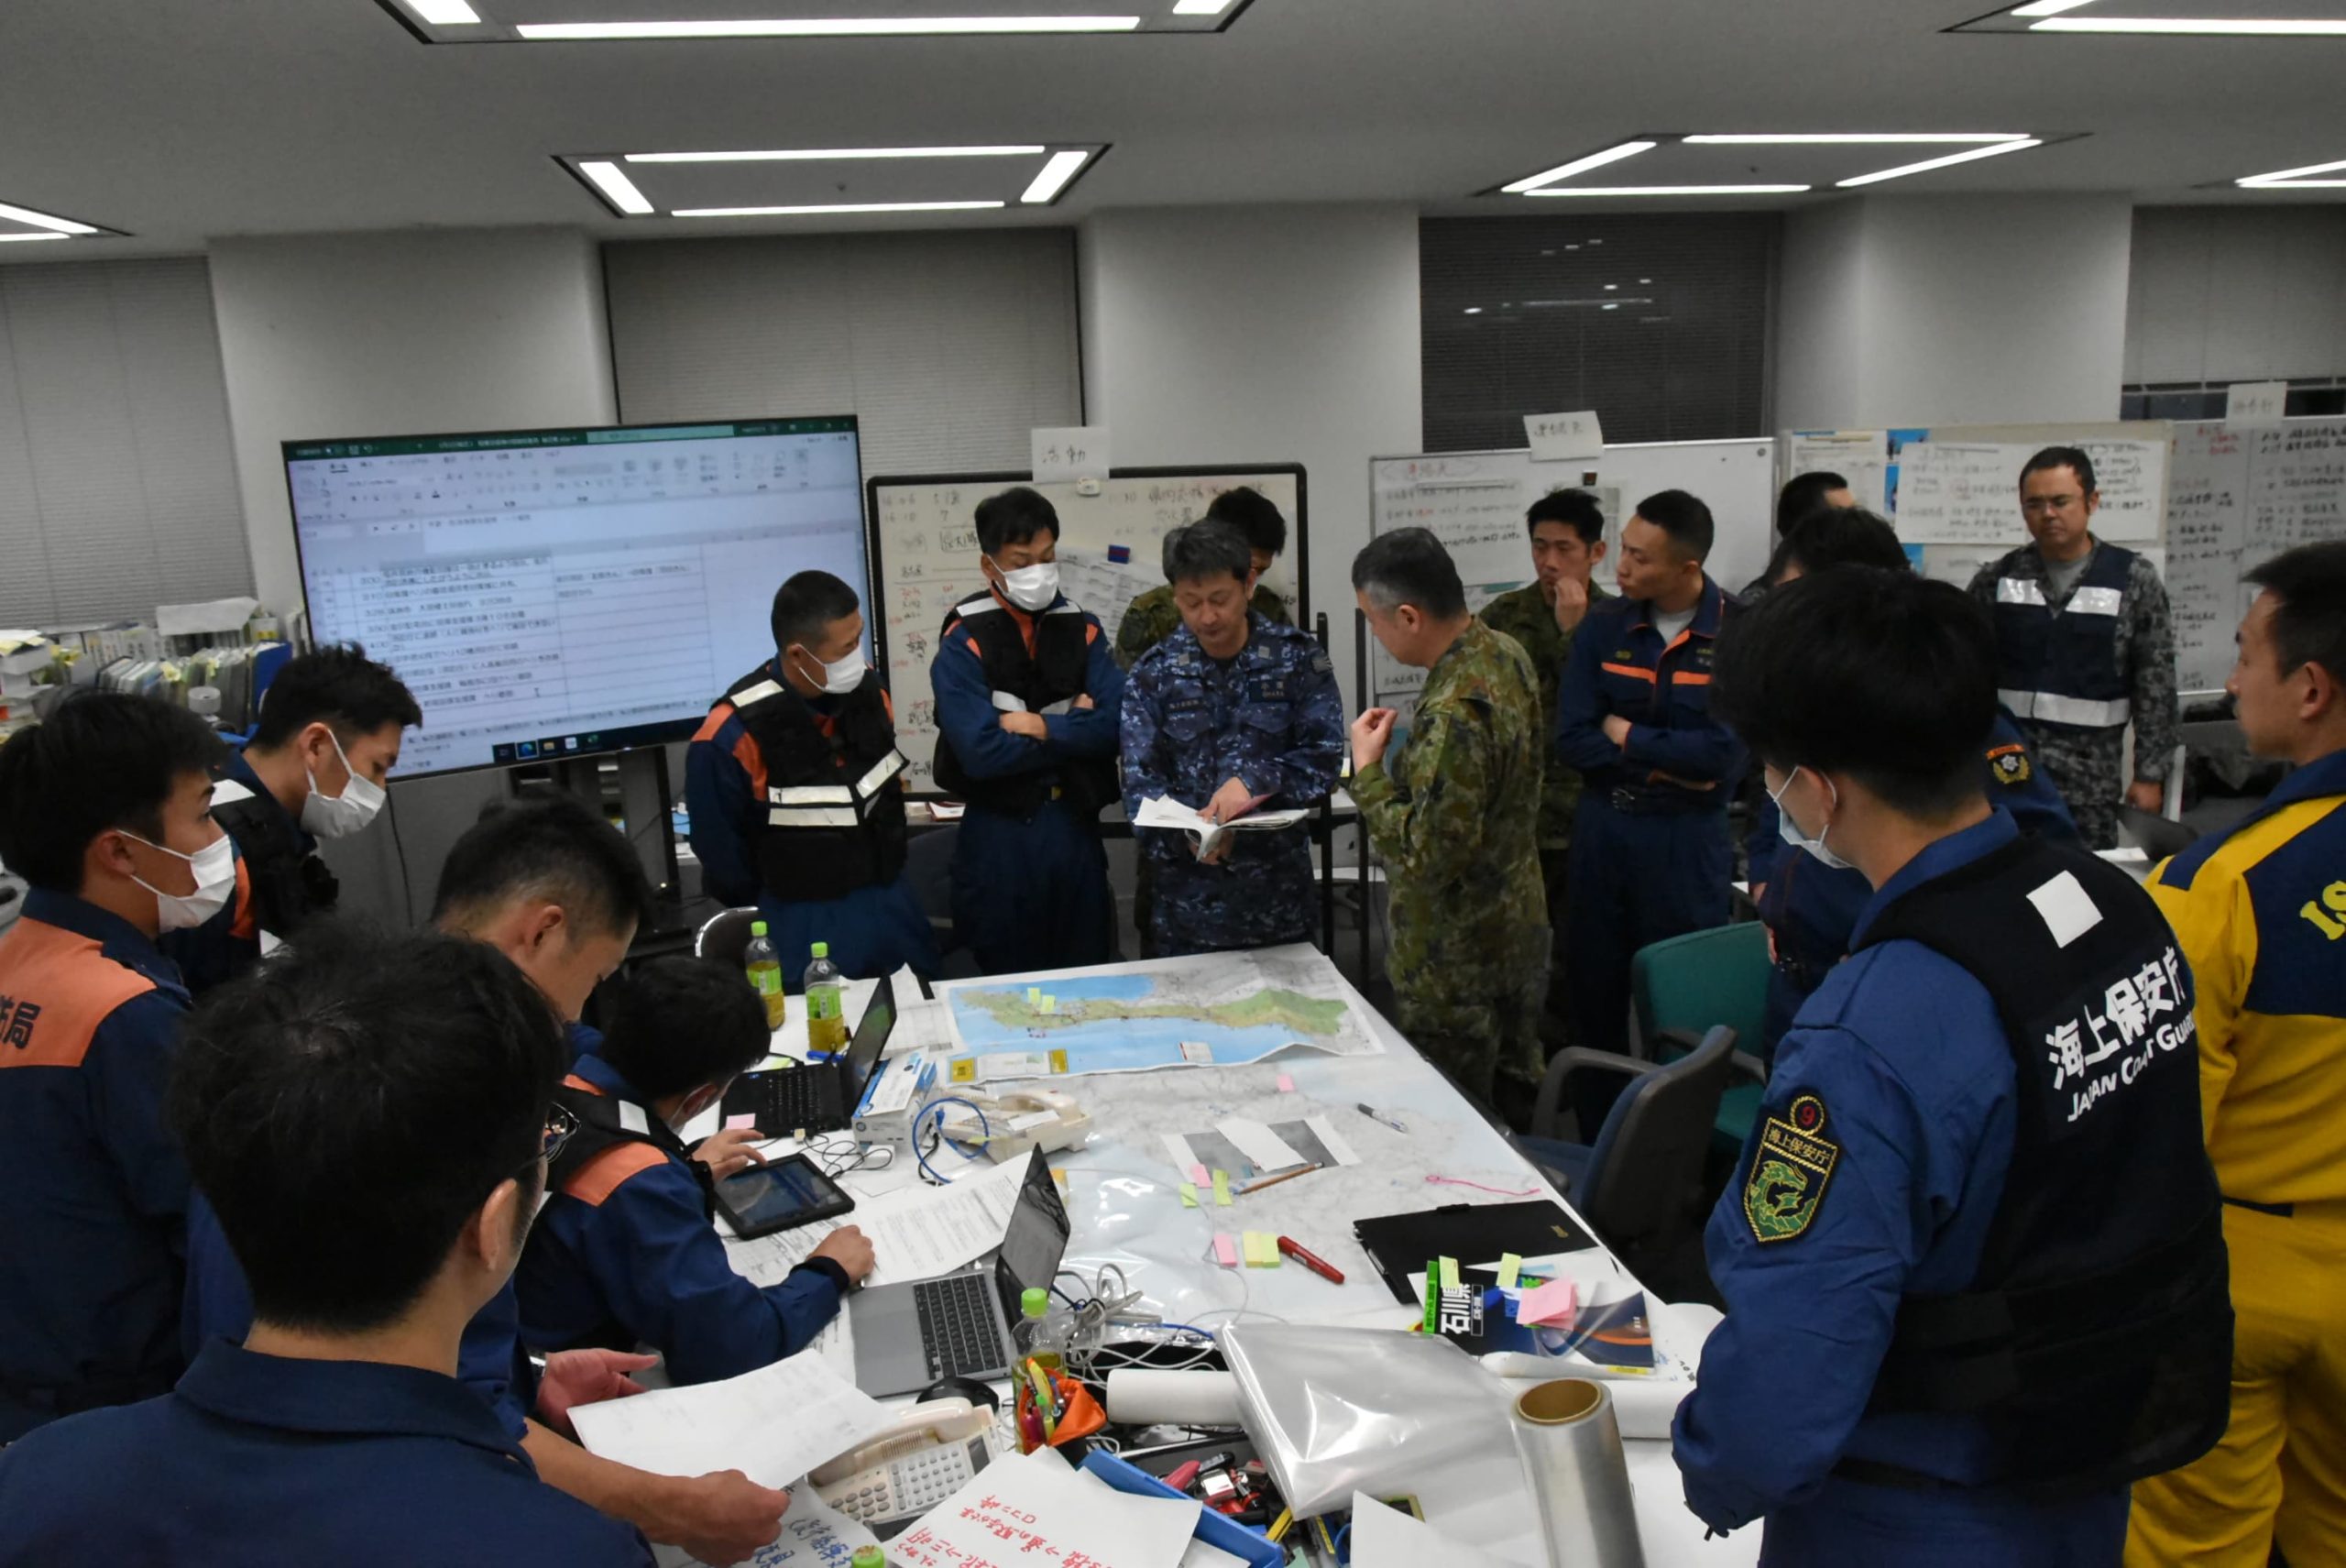 石川県庁内に設置された調整本部で、統括指揮支援隊が自衛隊や海上保安庁などの外部機関との調整を行う写真